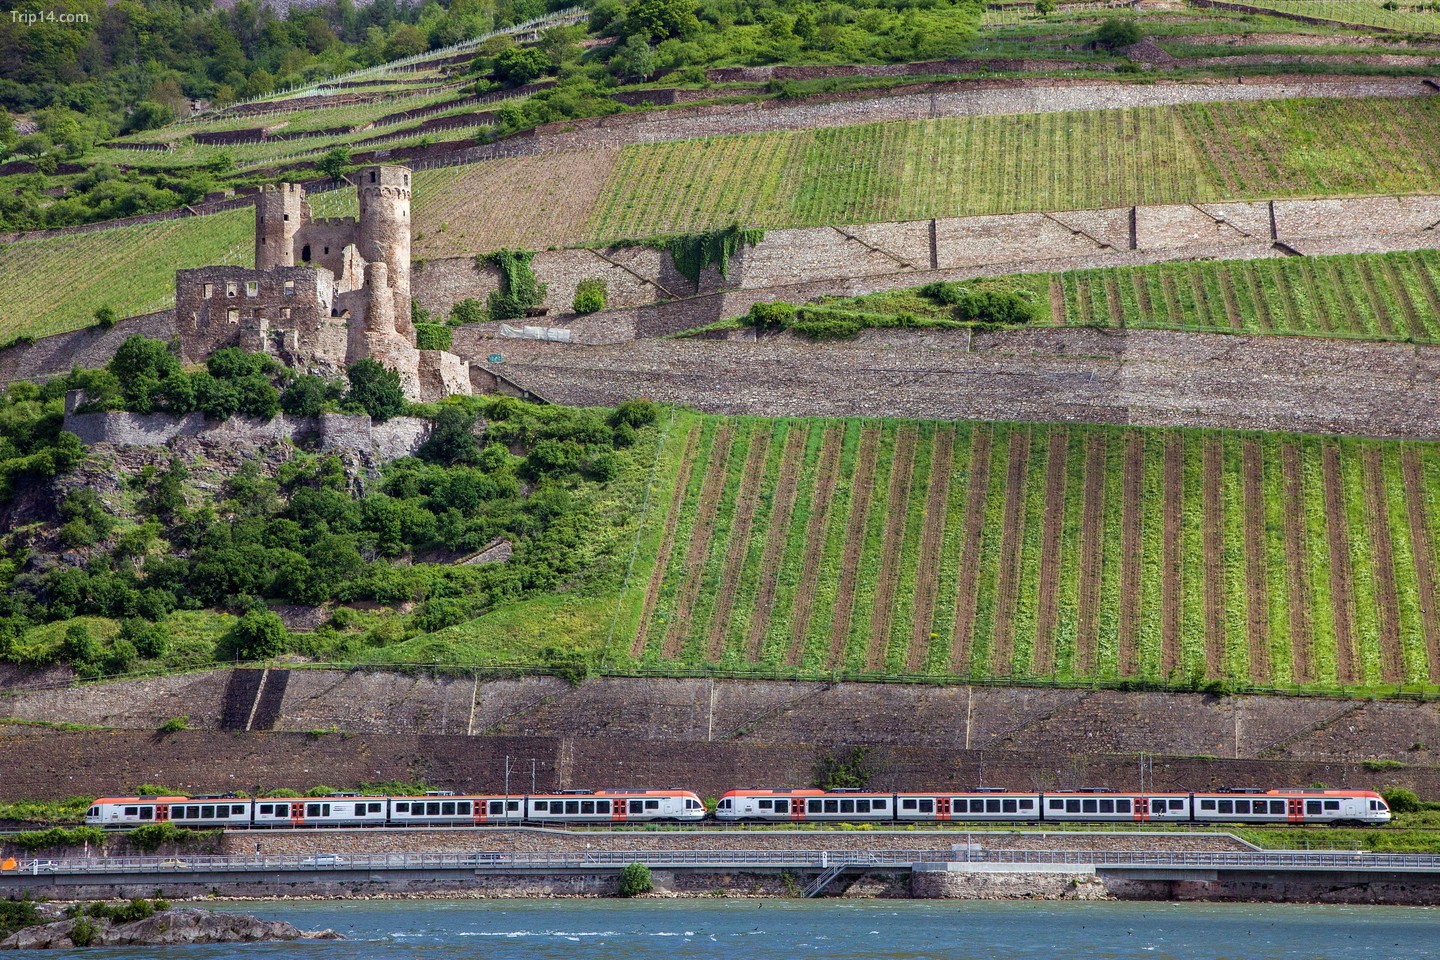 Ngắm nhìn những lâu đài tuyệt đẹp, chẳng hạn như Lâu đài Ehrenfels, trên chuyến tàu xuyên qua Thung lũng Rhine